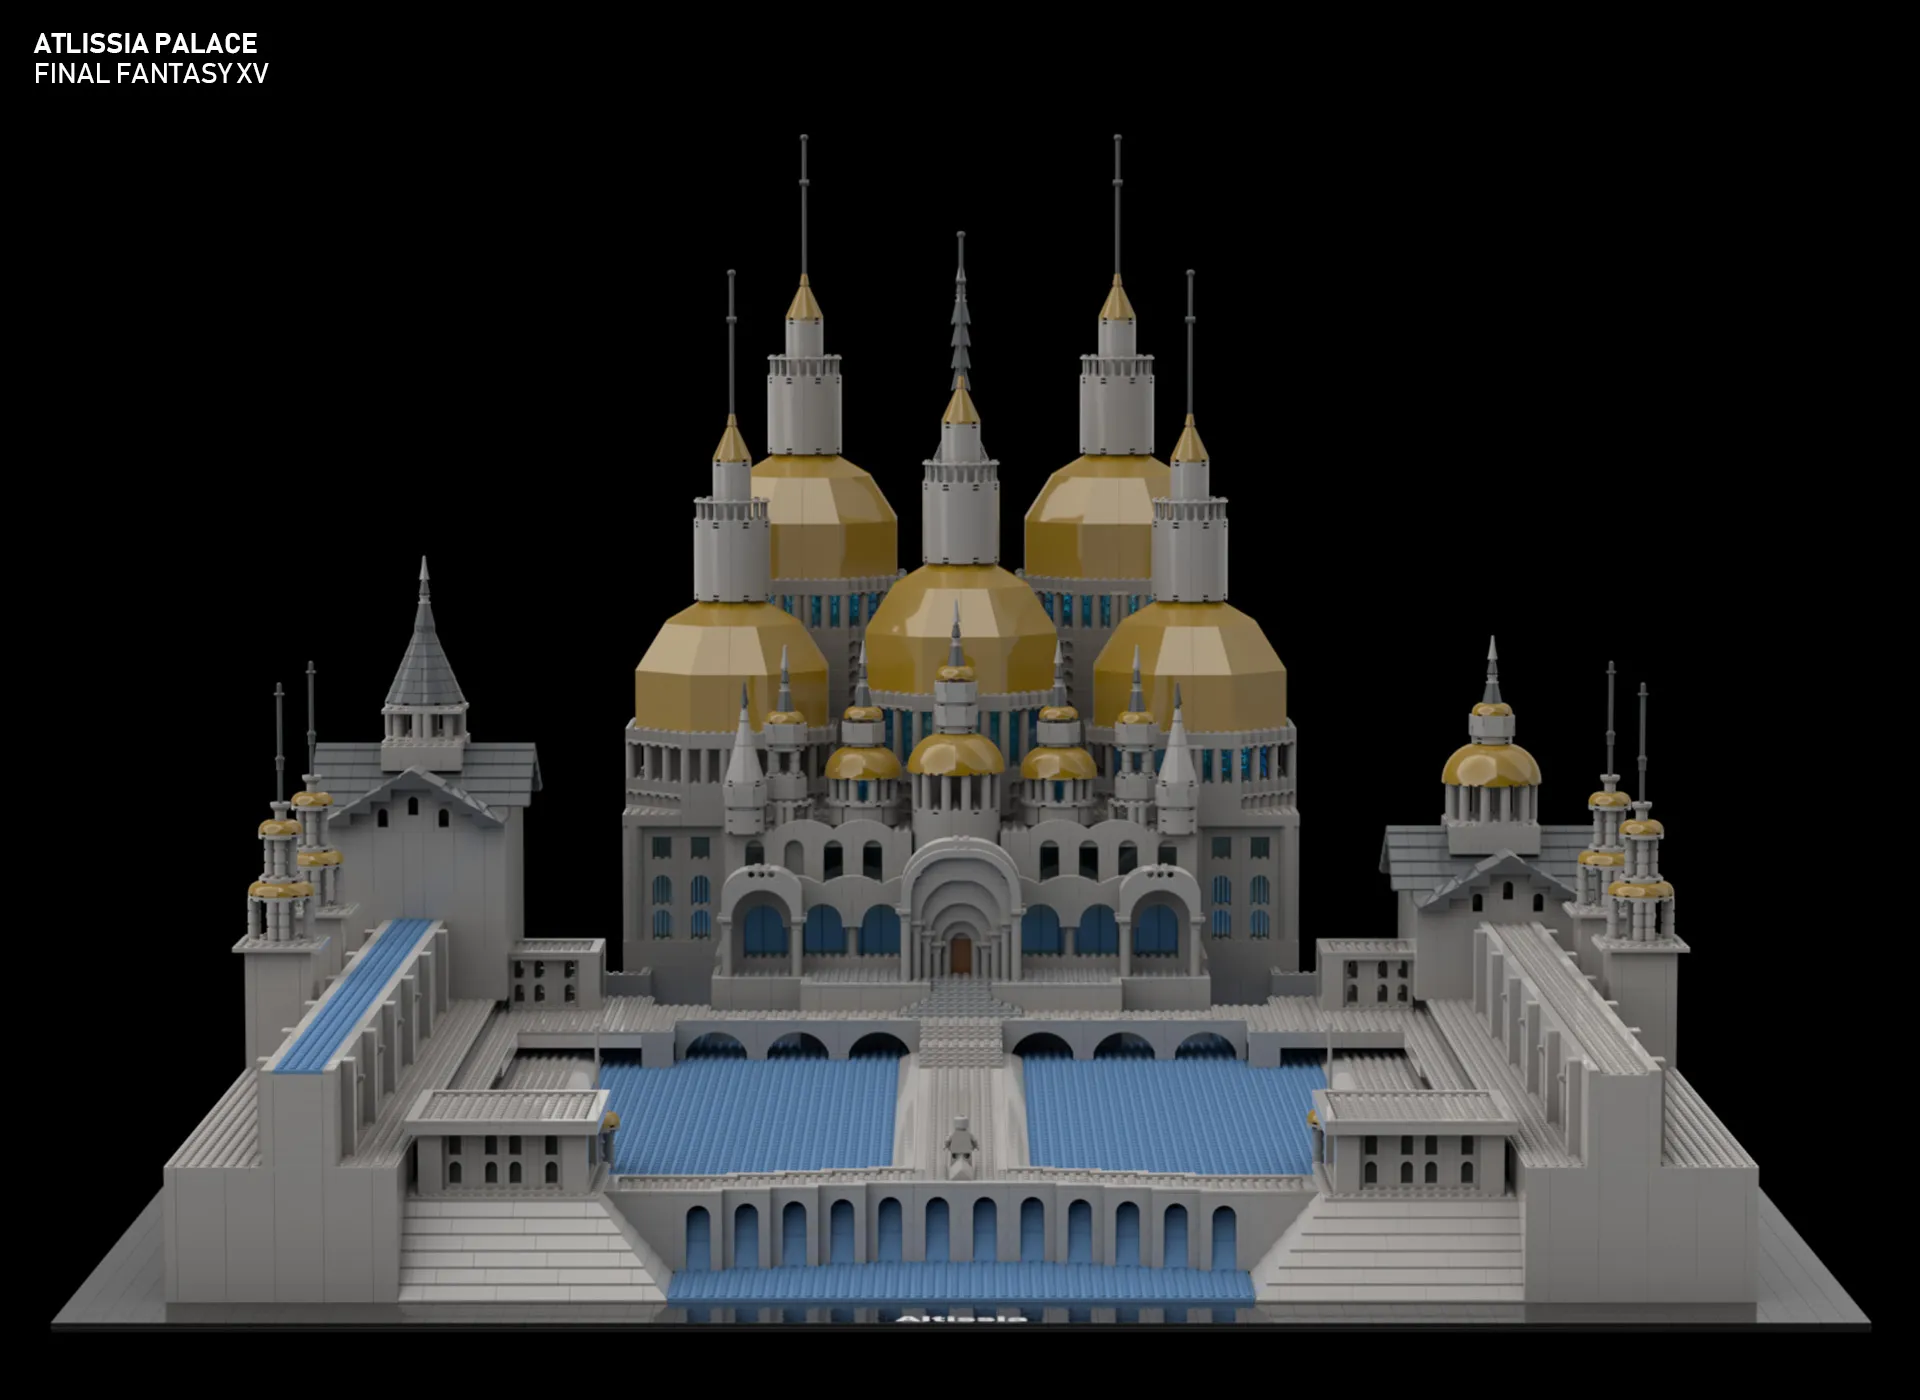 LEGO Altissia Palace